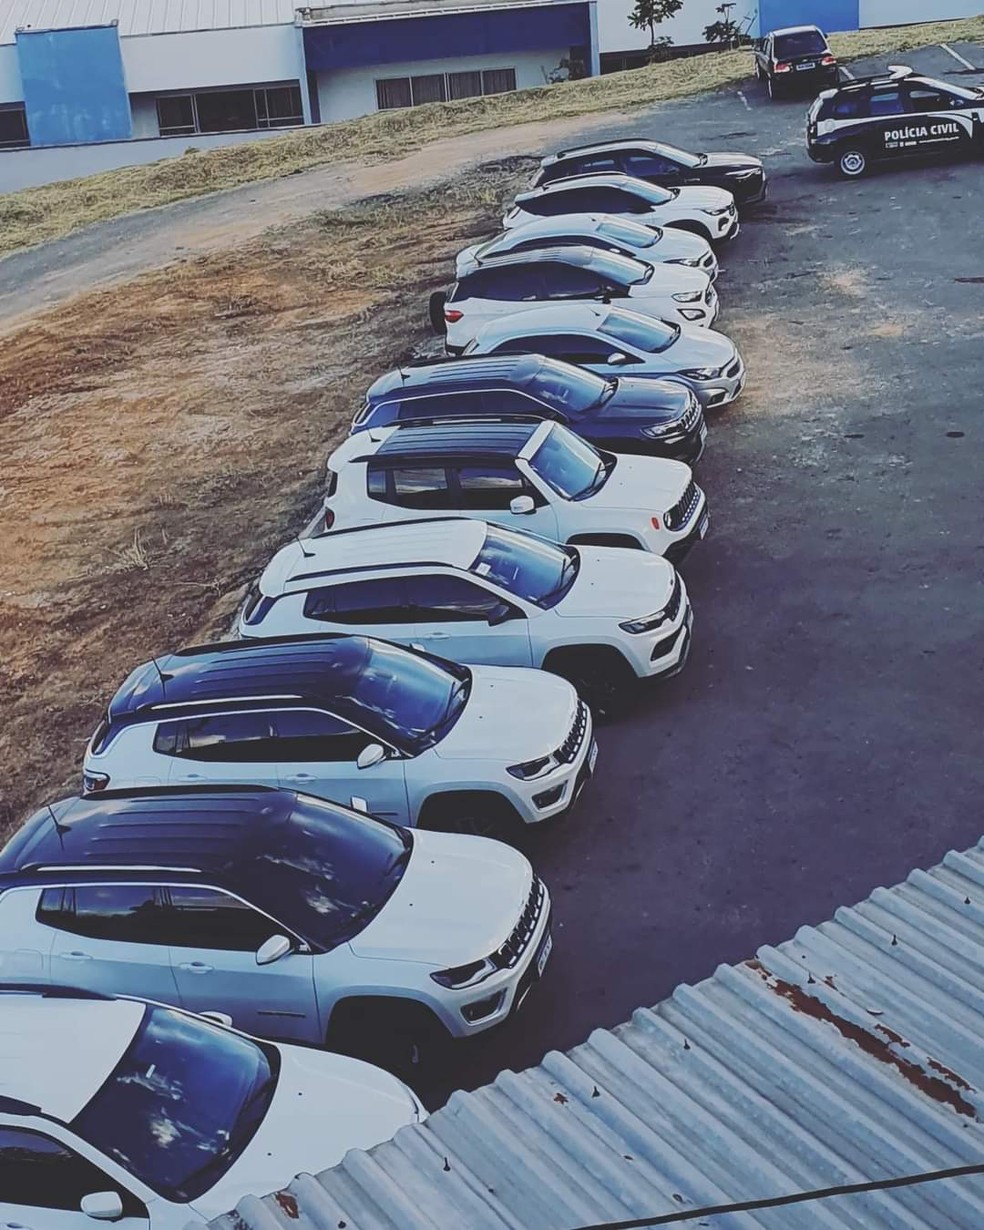 Por suspeita de fraude, 11 veículos de luxo são apreendidos em operação da Polícia Civil em Lavras (MG) — Foto: Divulgação/Polícia Civil 